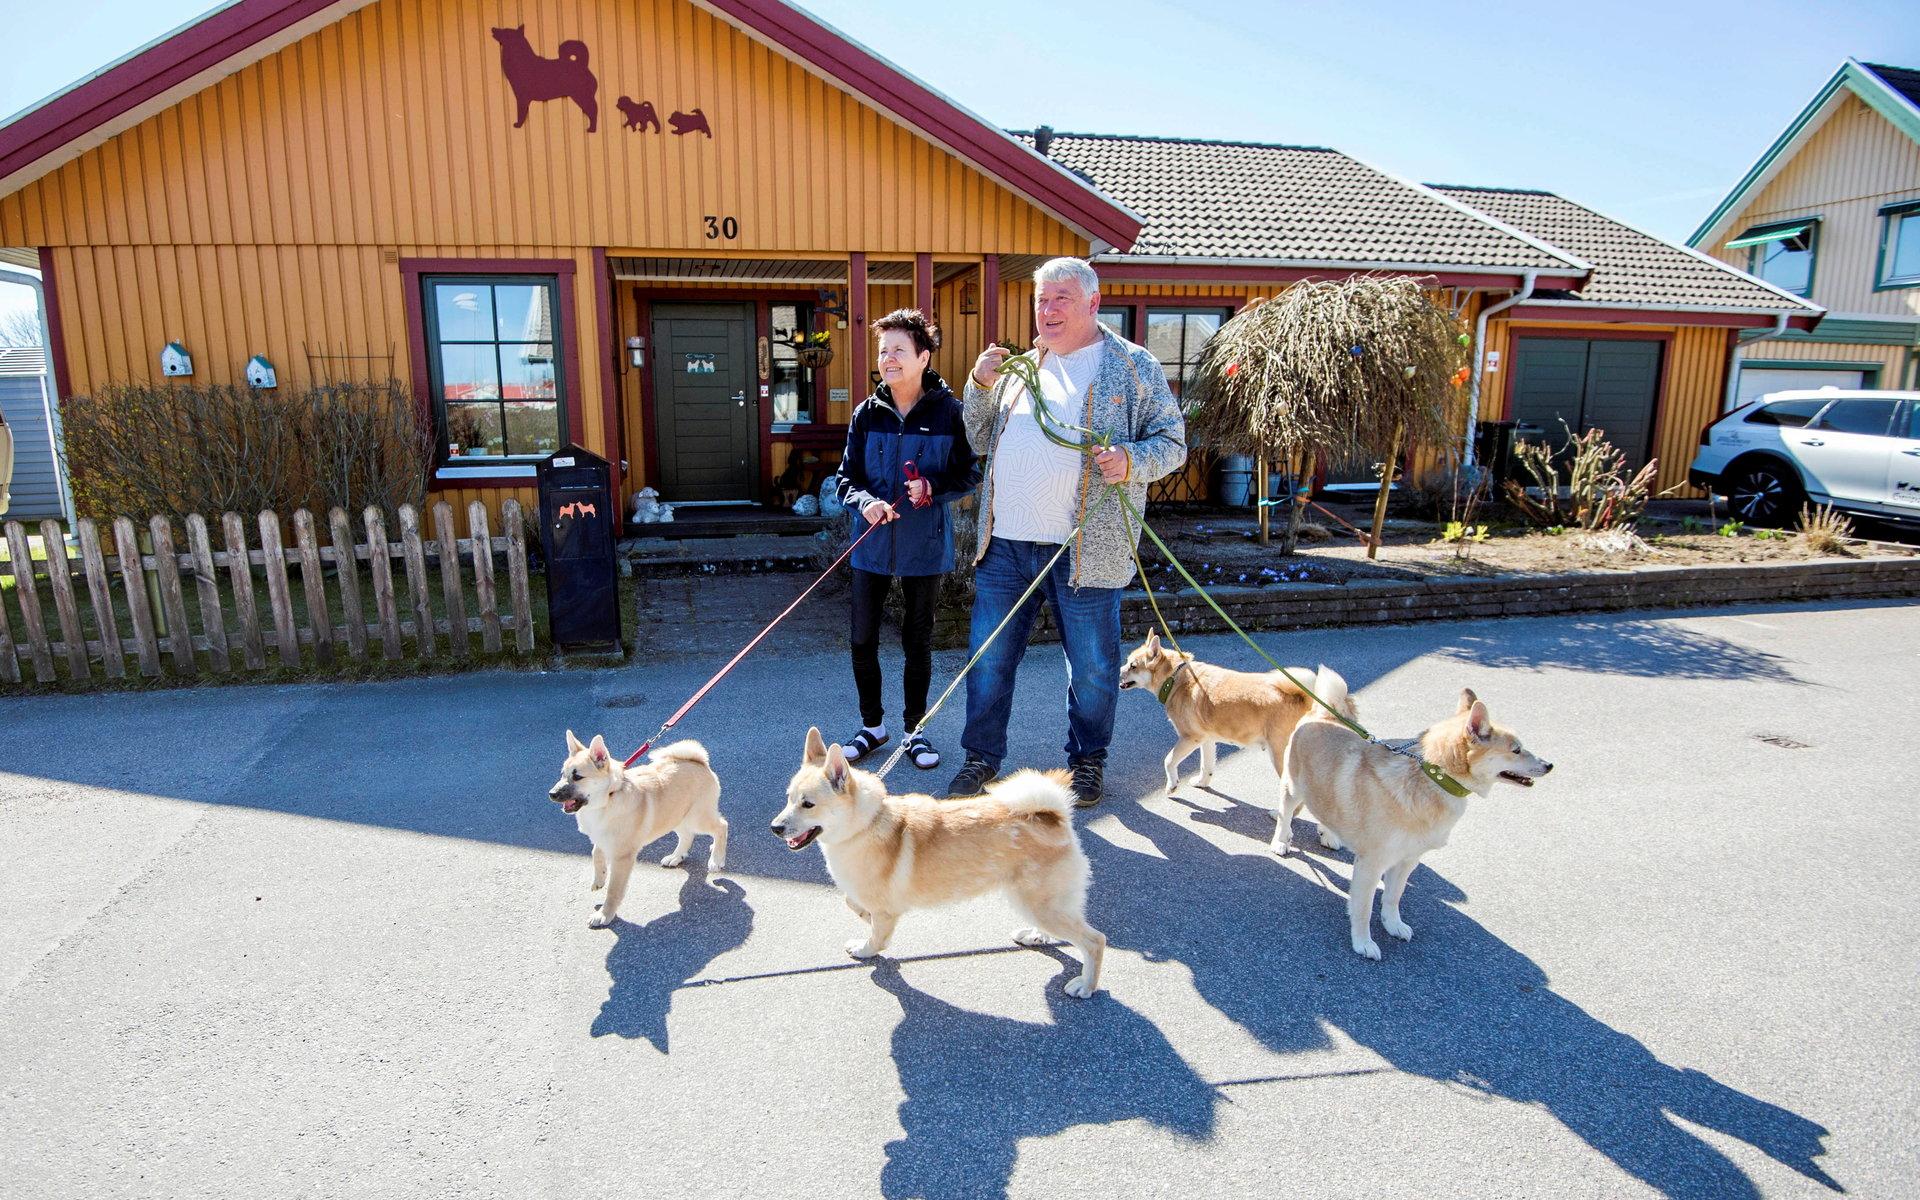 I 20 år har paret Hagsäter drivit Gnipagrottans kennel från sitt hus på Fyllinge och har lång erfarenhet av hur hundköp bör gå till. 